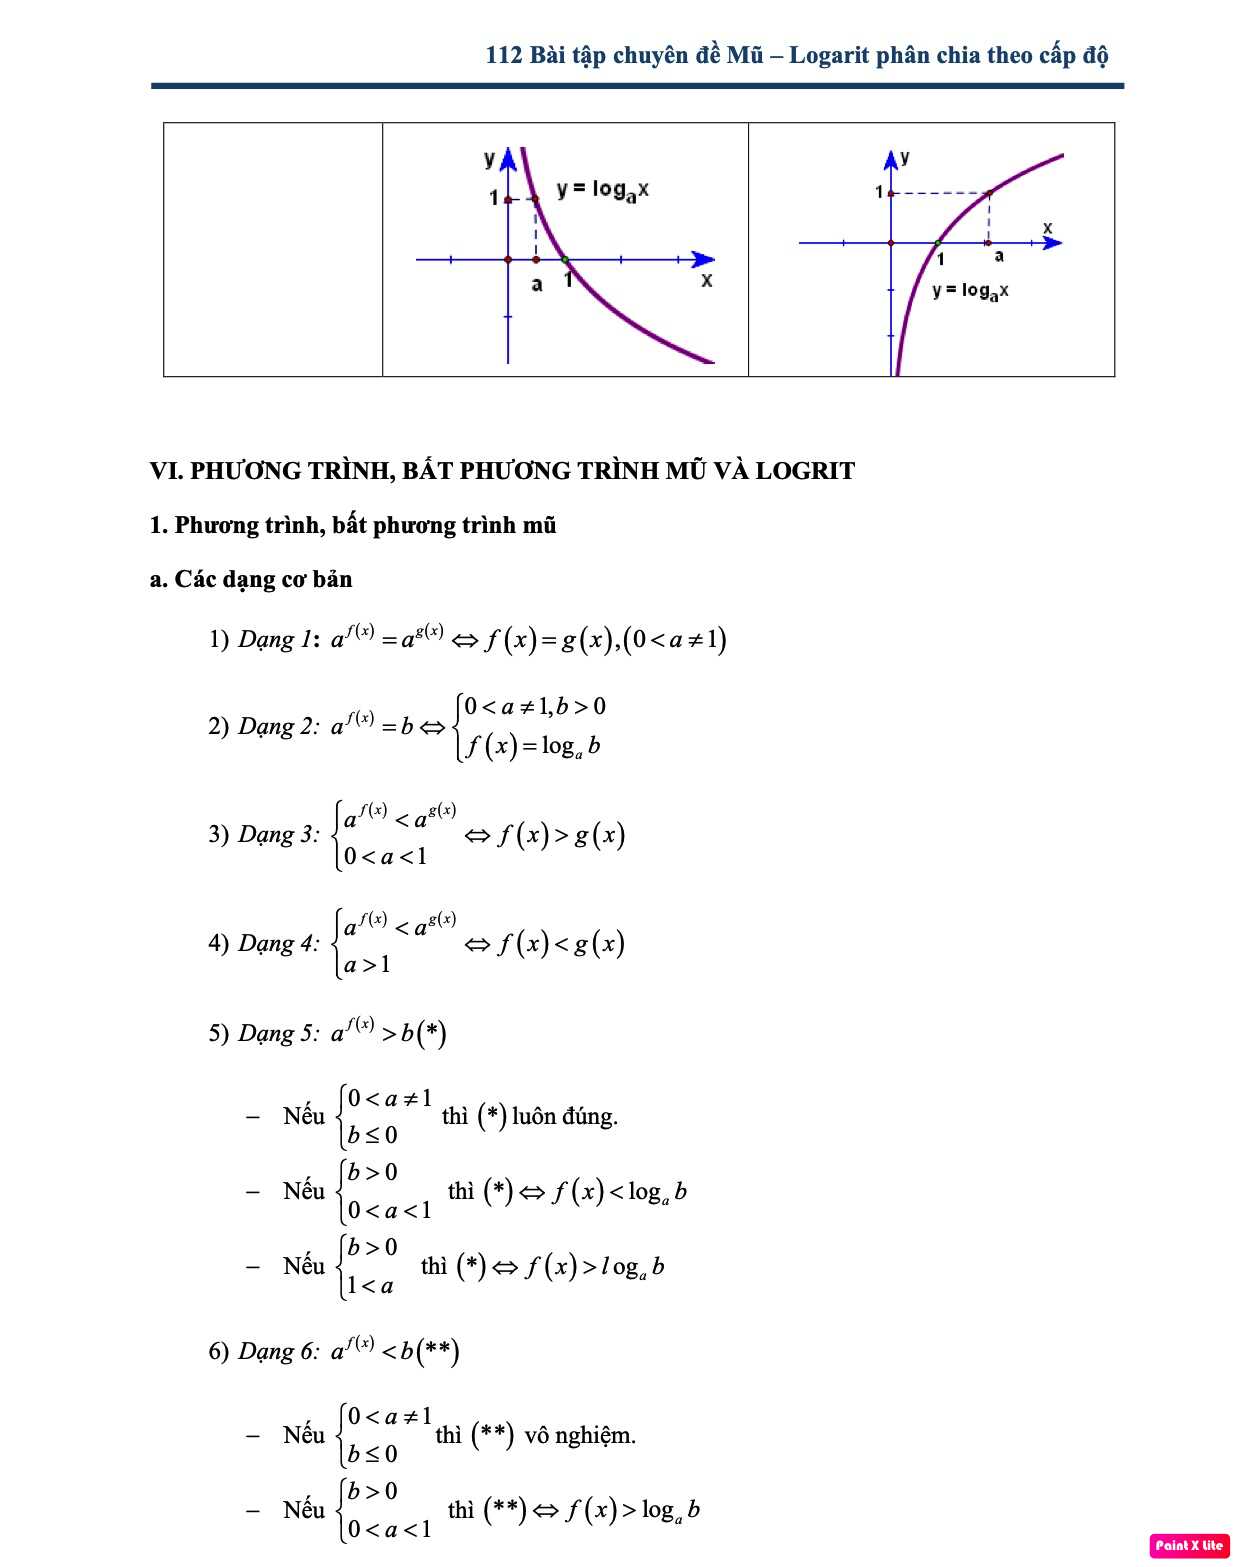 Bài tập bất phương trình mũ và logarit